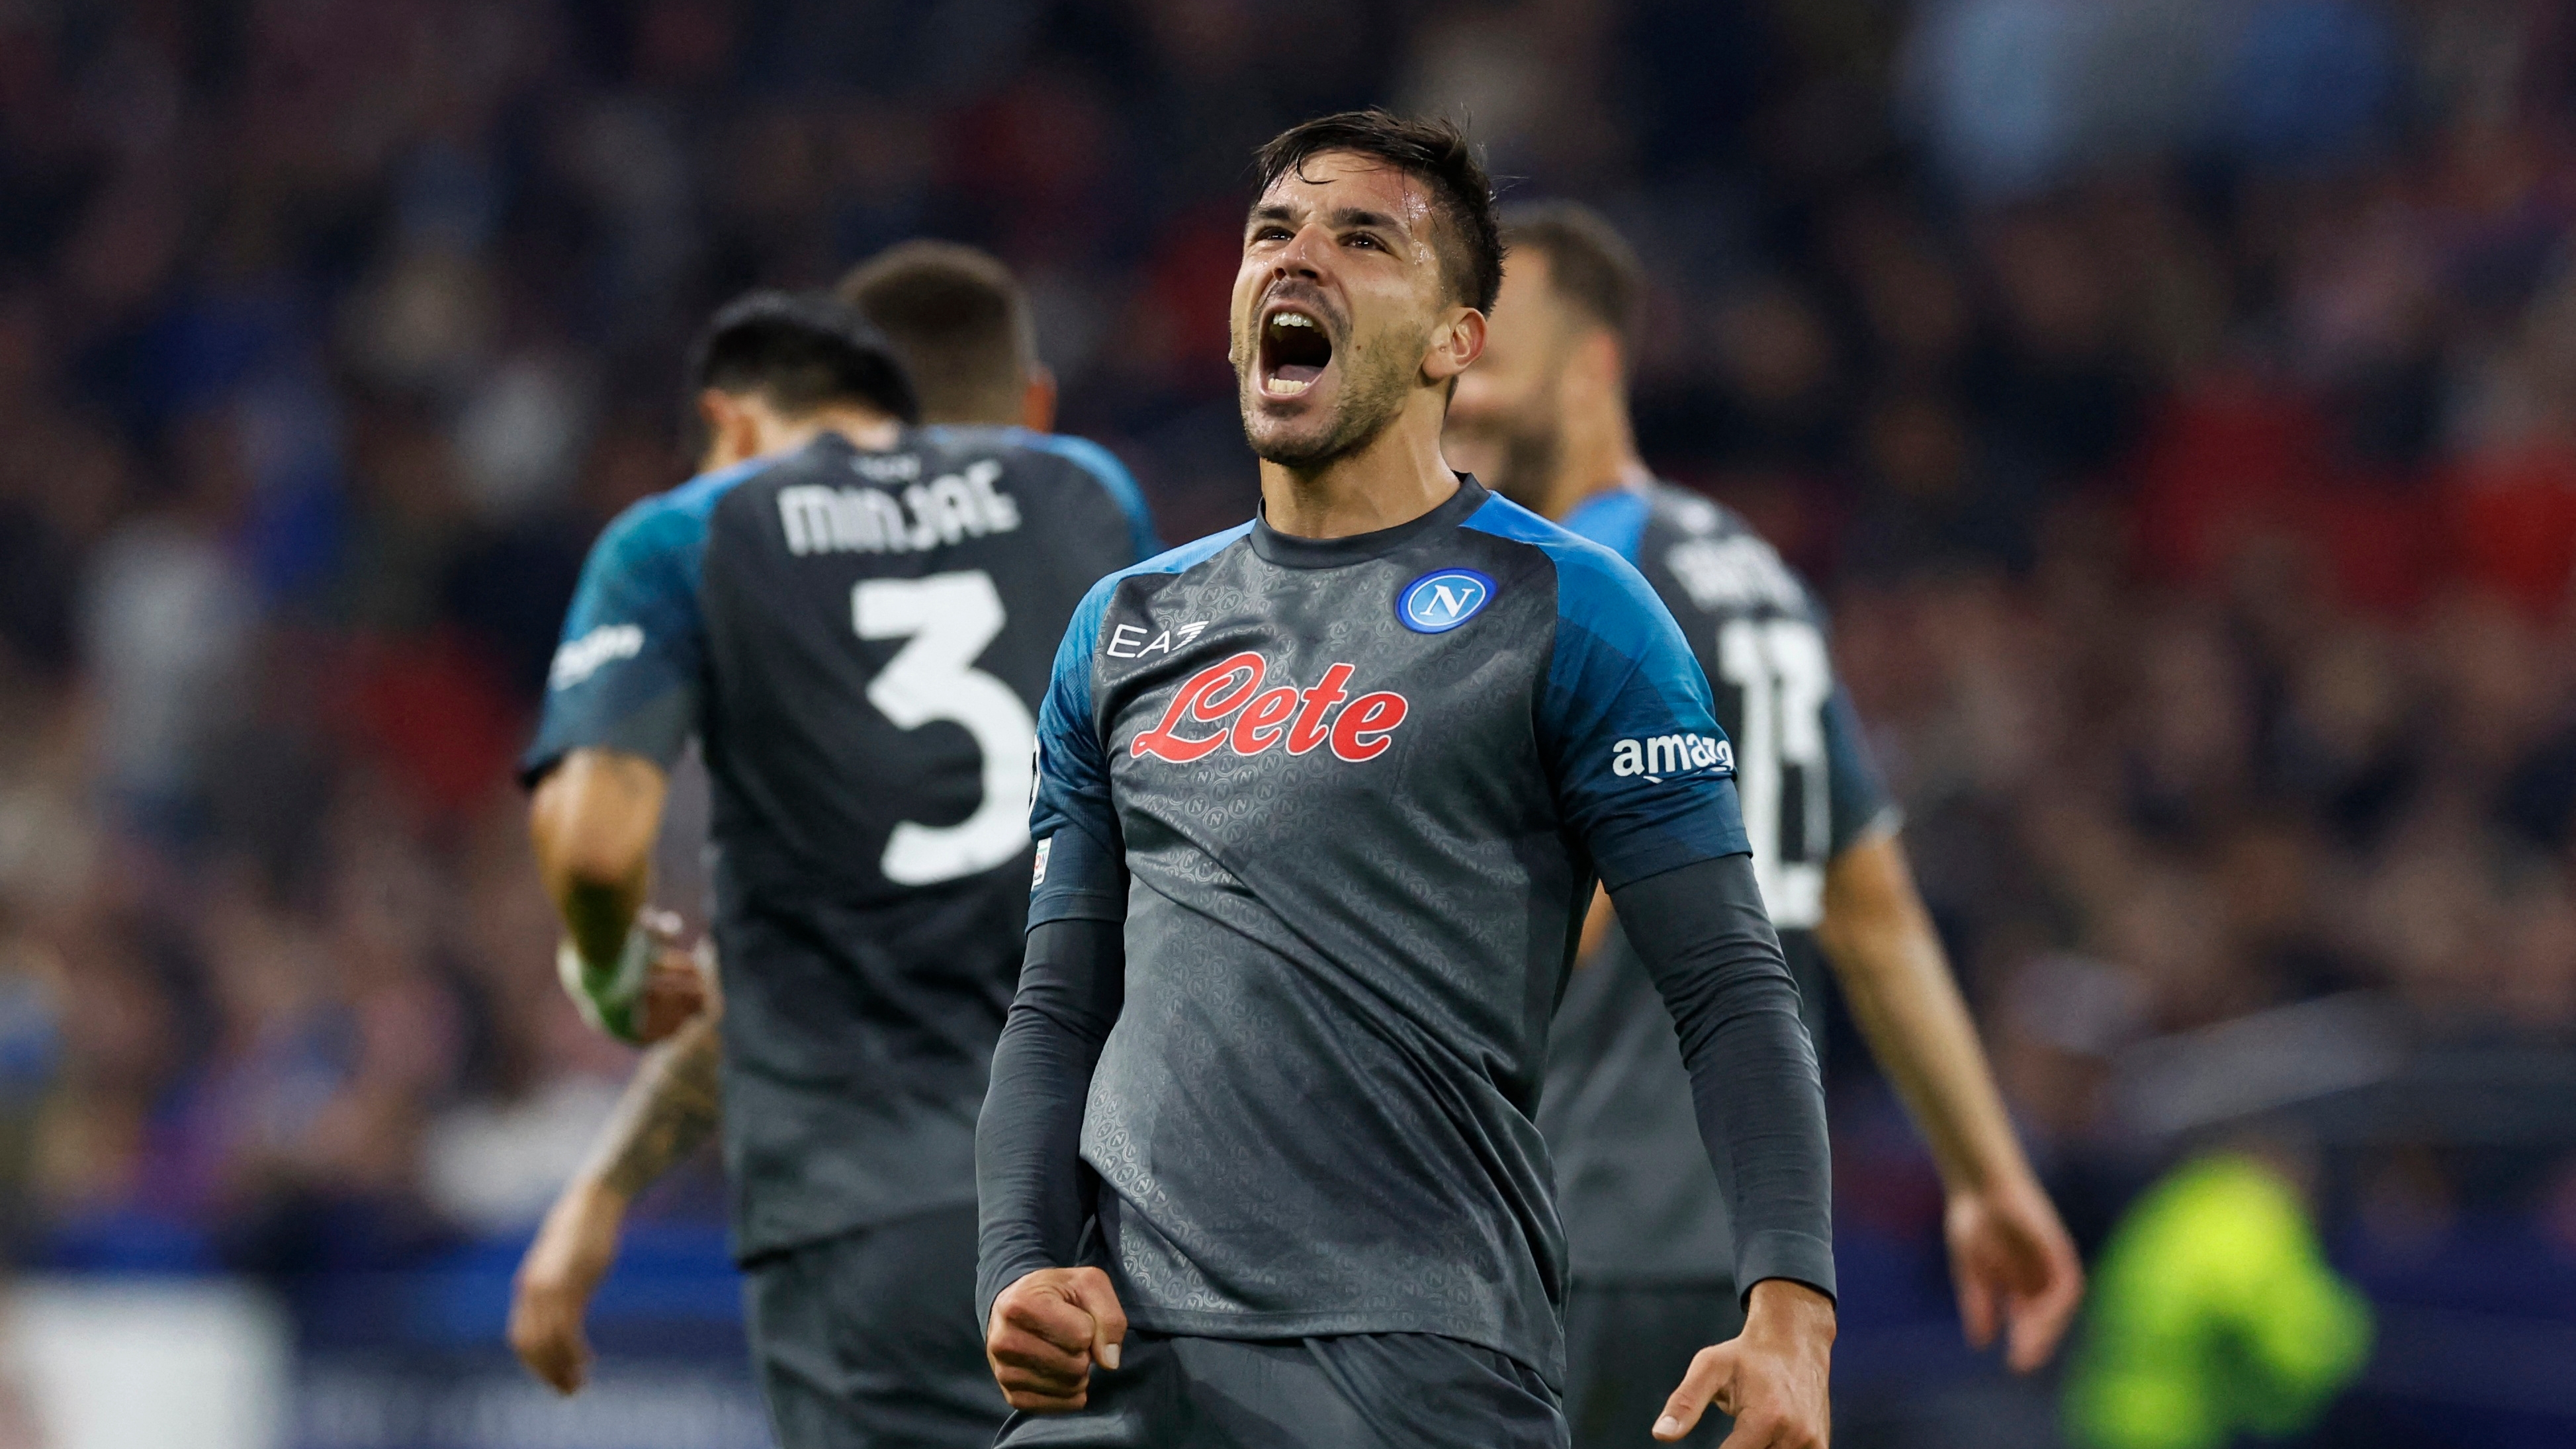 Con un gol de Gio Simeone, Napoli aplastó 6-1 al Ajax en la Champions League